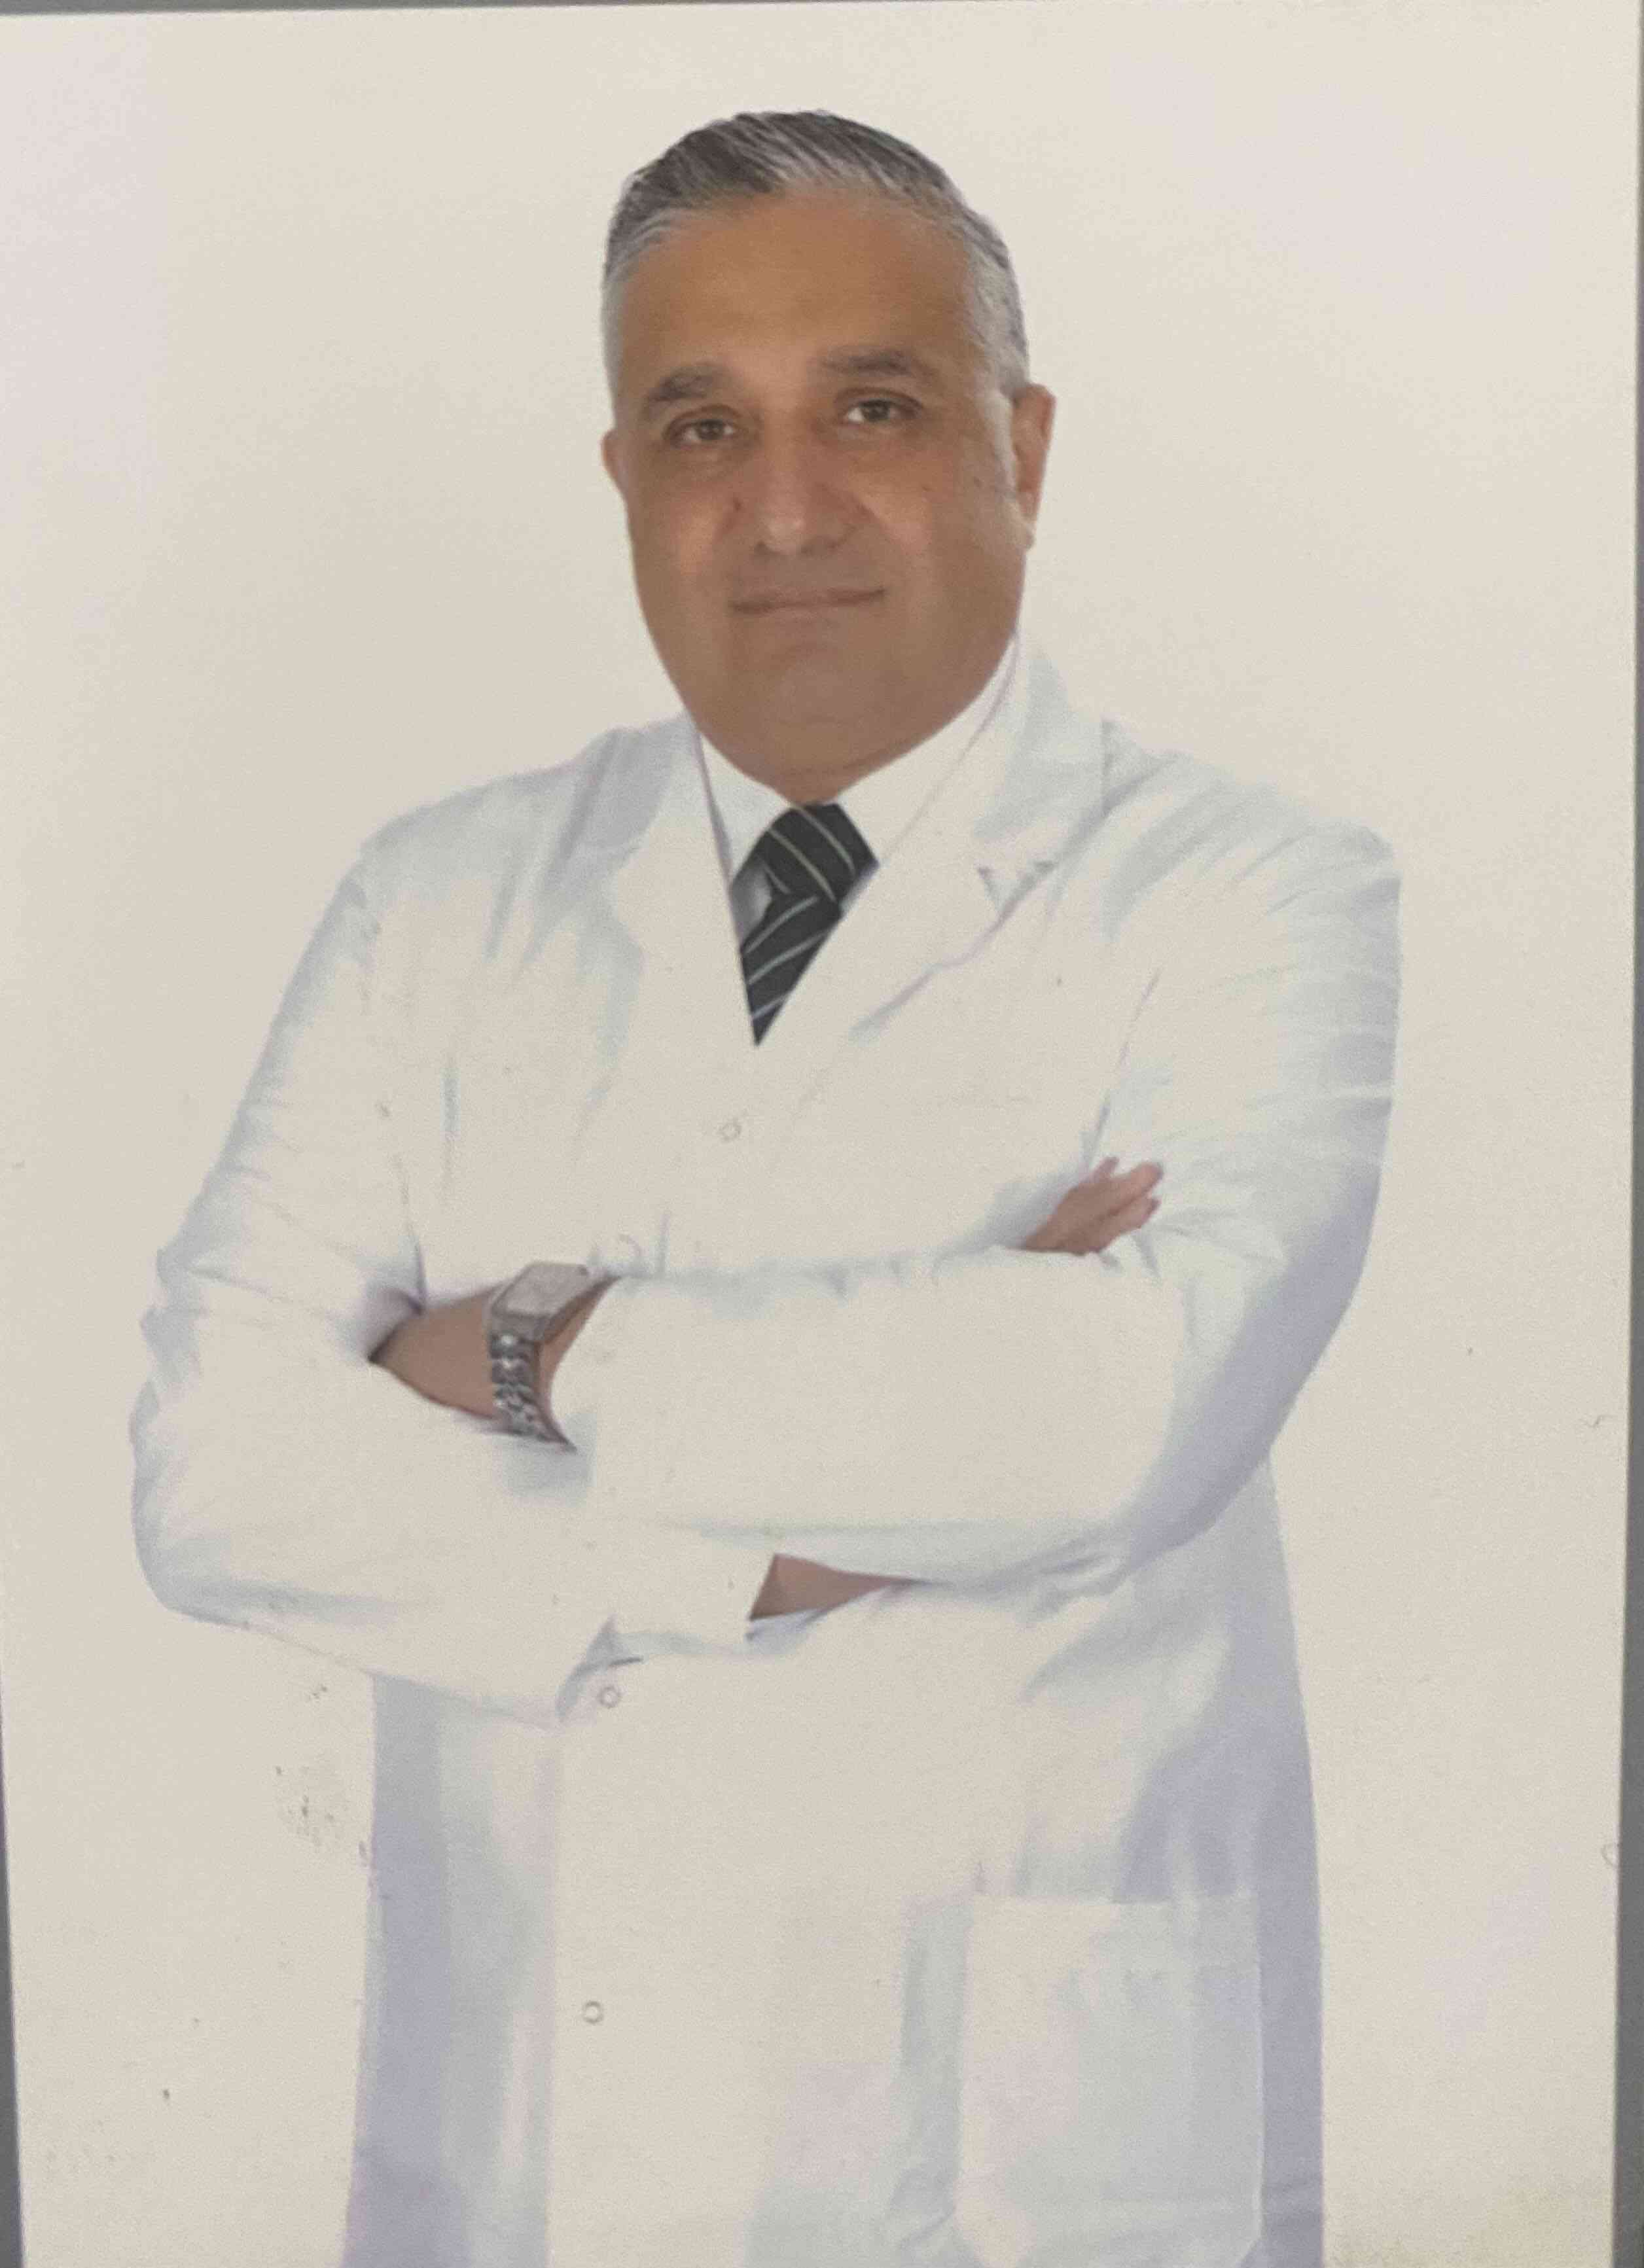 Dr. Sherif Mourad